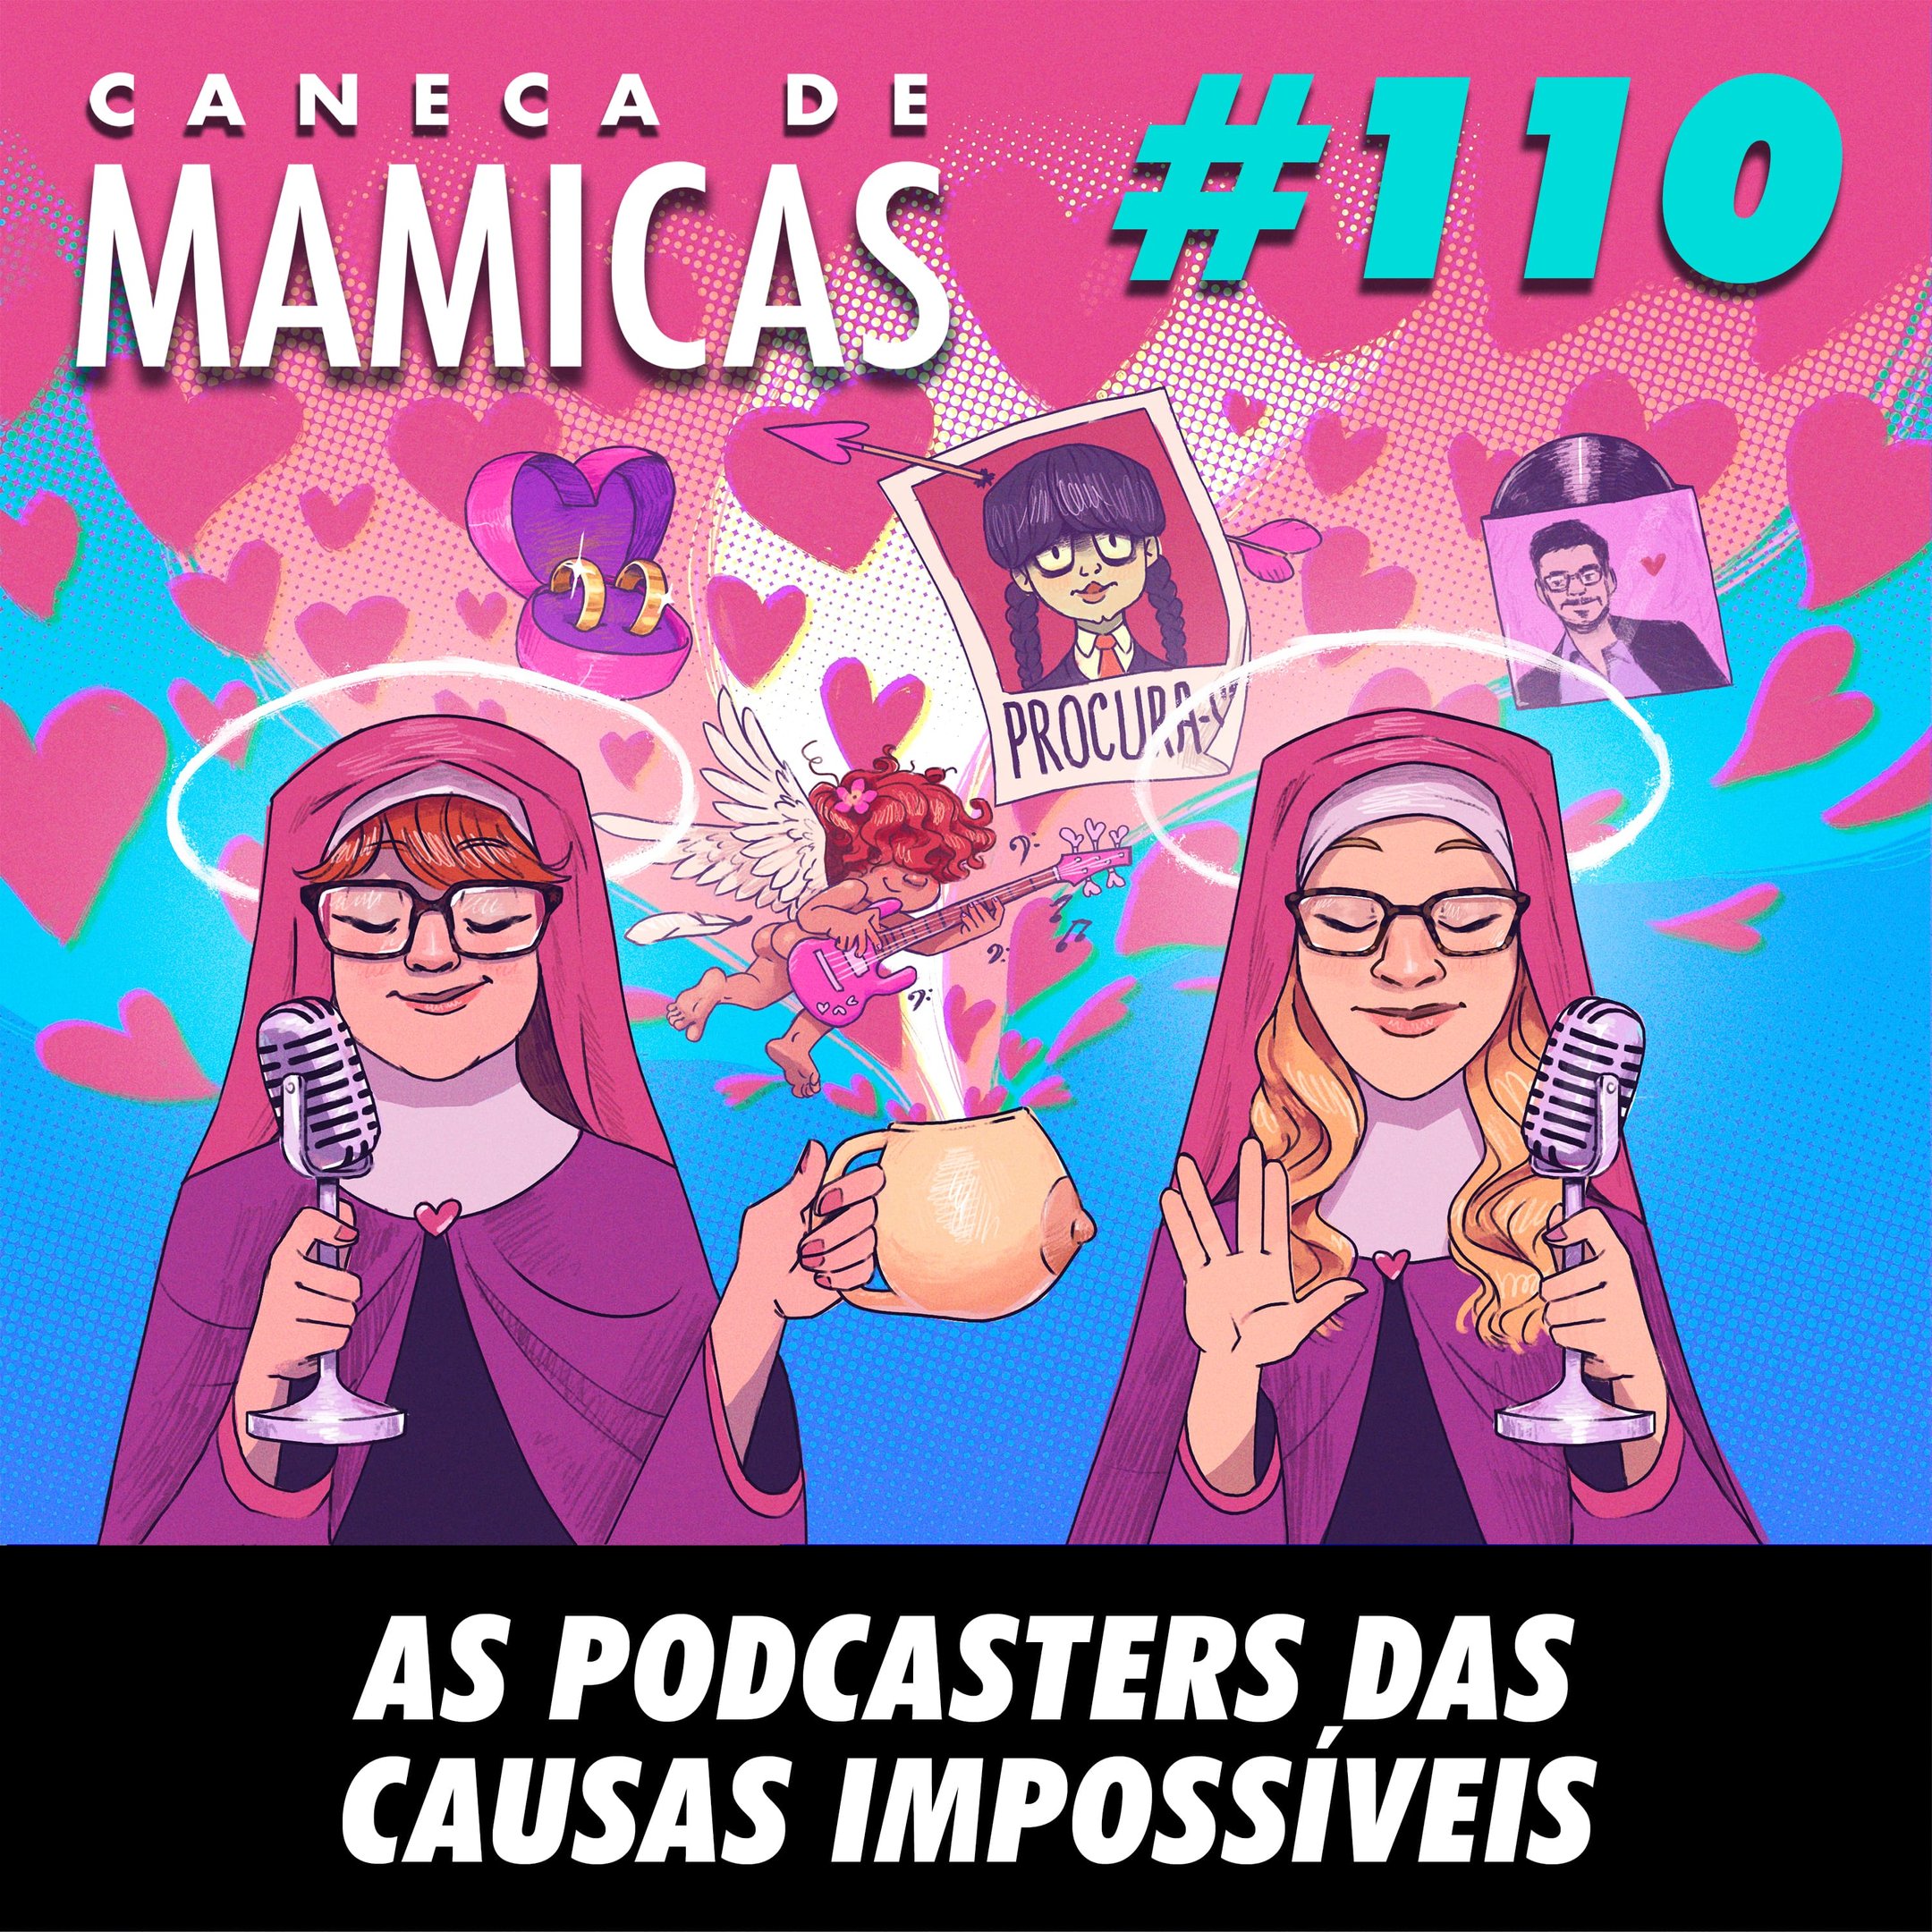 Caneca de Mamicas 110 - As Podcasters das causas impossíveis